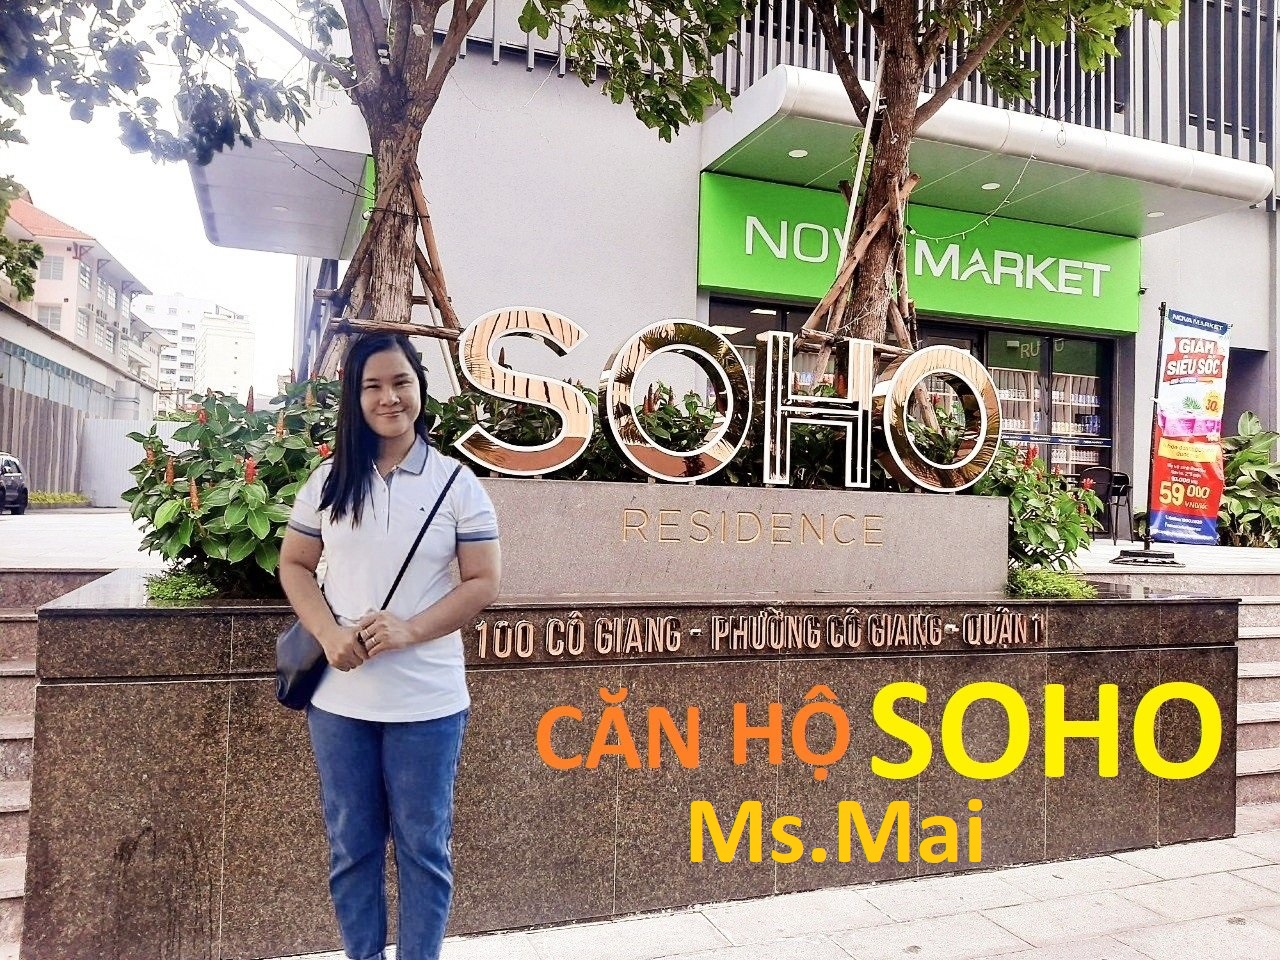 Ms. Mai - chuyên ký gửi căn hộ soho residence